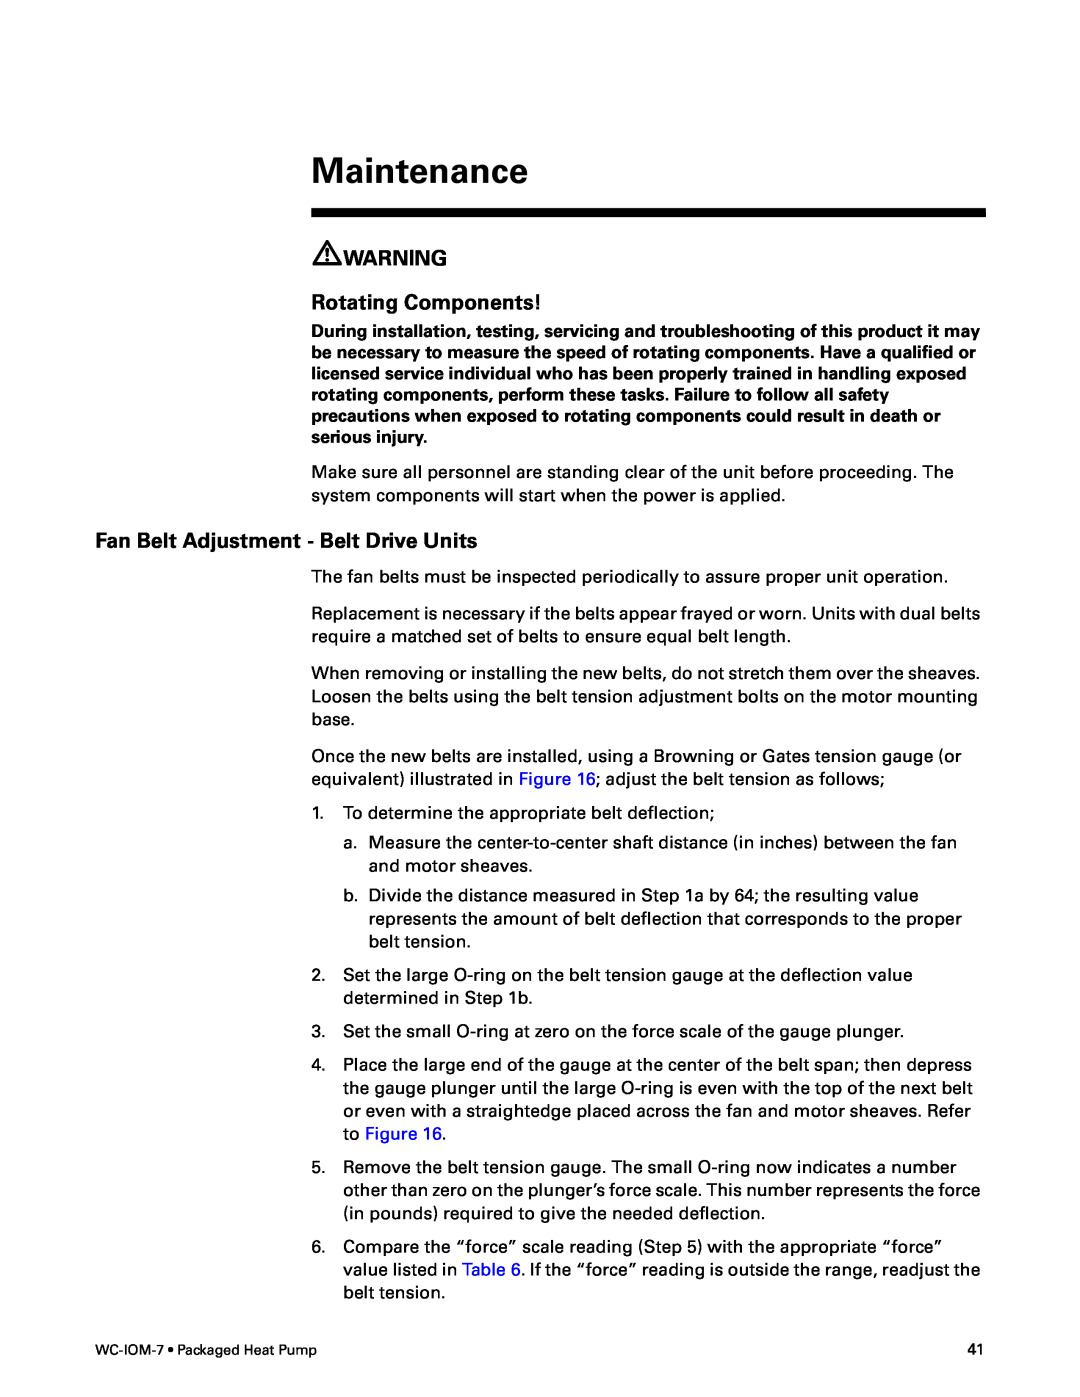 Trane WC-IOM-7 manual Maintenance, Fan Belt Adjustment - Belt Drive Units, Rotating Components 